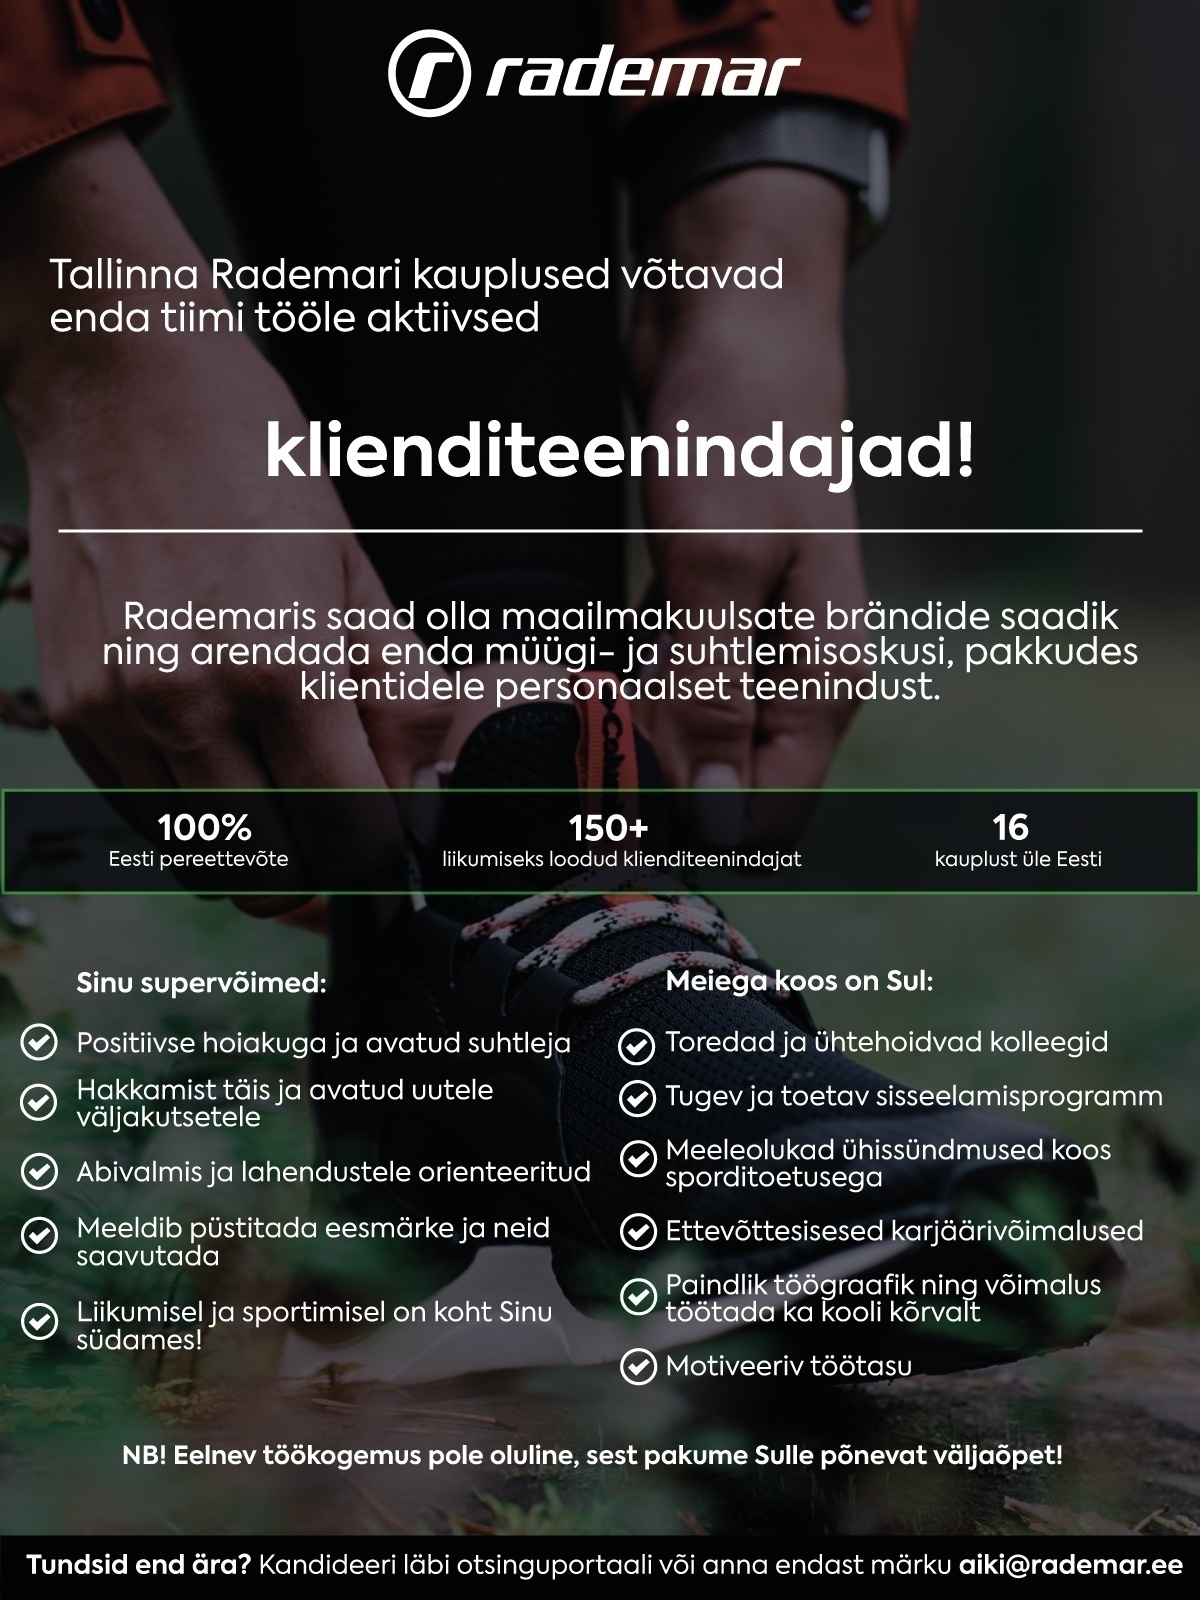 OÜ Rademar Aktiivsed klienditeenindajad Tallinna Rademari kauplustesse